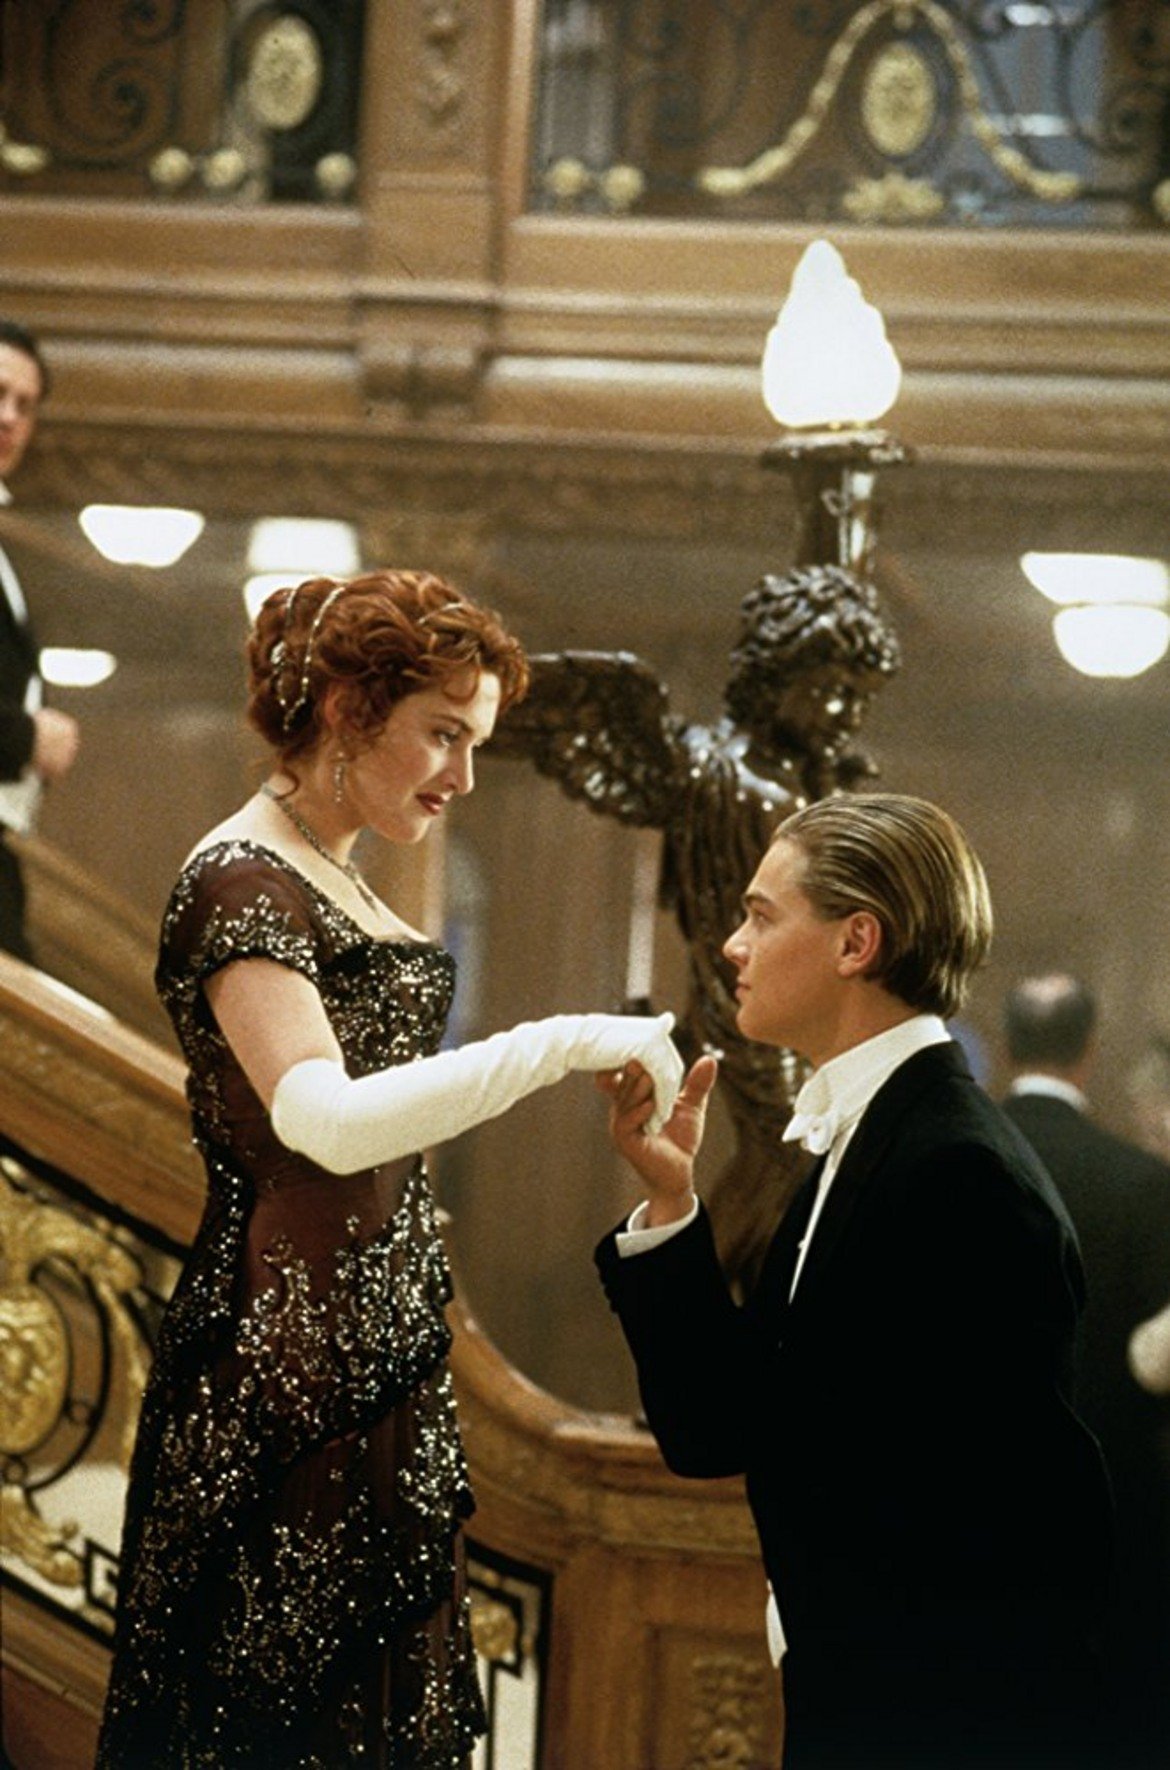  "Титаник" 

Филмът, който раздели мненията в редакцията на "силно любим" и "още по-силно мразим". "Титаник" не оставя никого безразличен. За едни това е любовната история, която не спира да вълнува от 1997-а насам. За други е лигава романтична драма с предизвестен край (защото всички знаят какво се случва с кораба). Породила безброй спорове заслужава ли си 11-те "Оскар"-а или всичко е пресилено, както и много геометрични сметки можеше ли Джак да се побере на онази врата. Оставяме го тук в името на добрия спор...